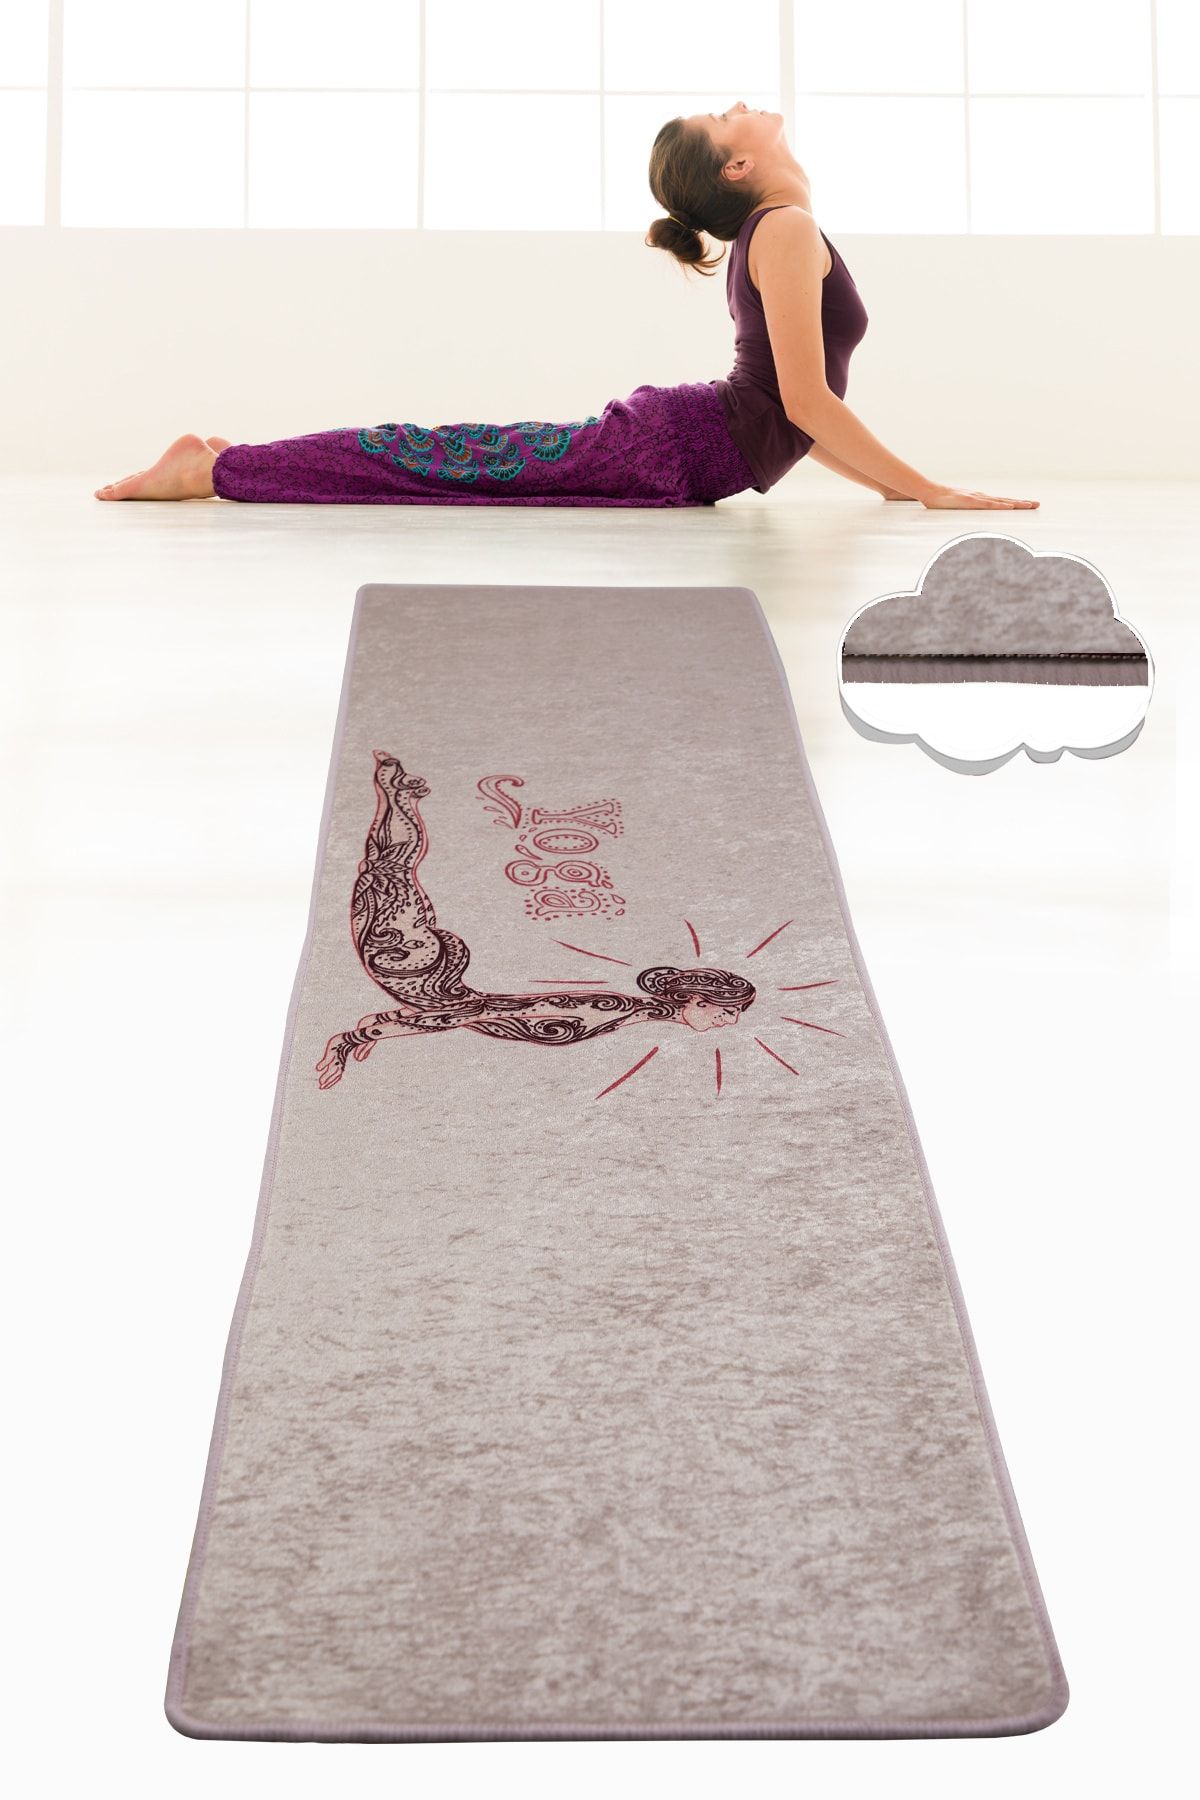 Chilai Home BANDA  60X200 cm Yoga,Spor,Fitness,Pilates Halısı Yoga Matı Yıkanabilir Kaymaz